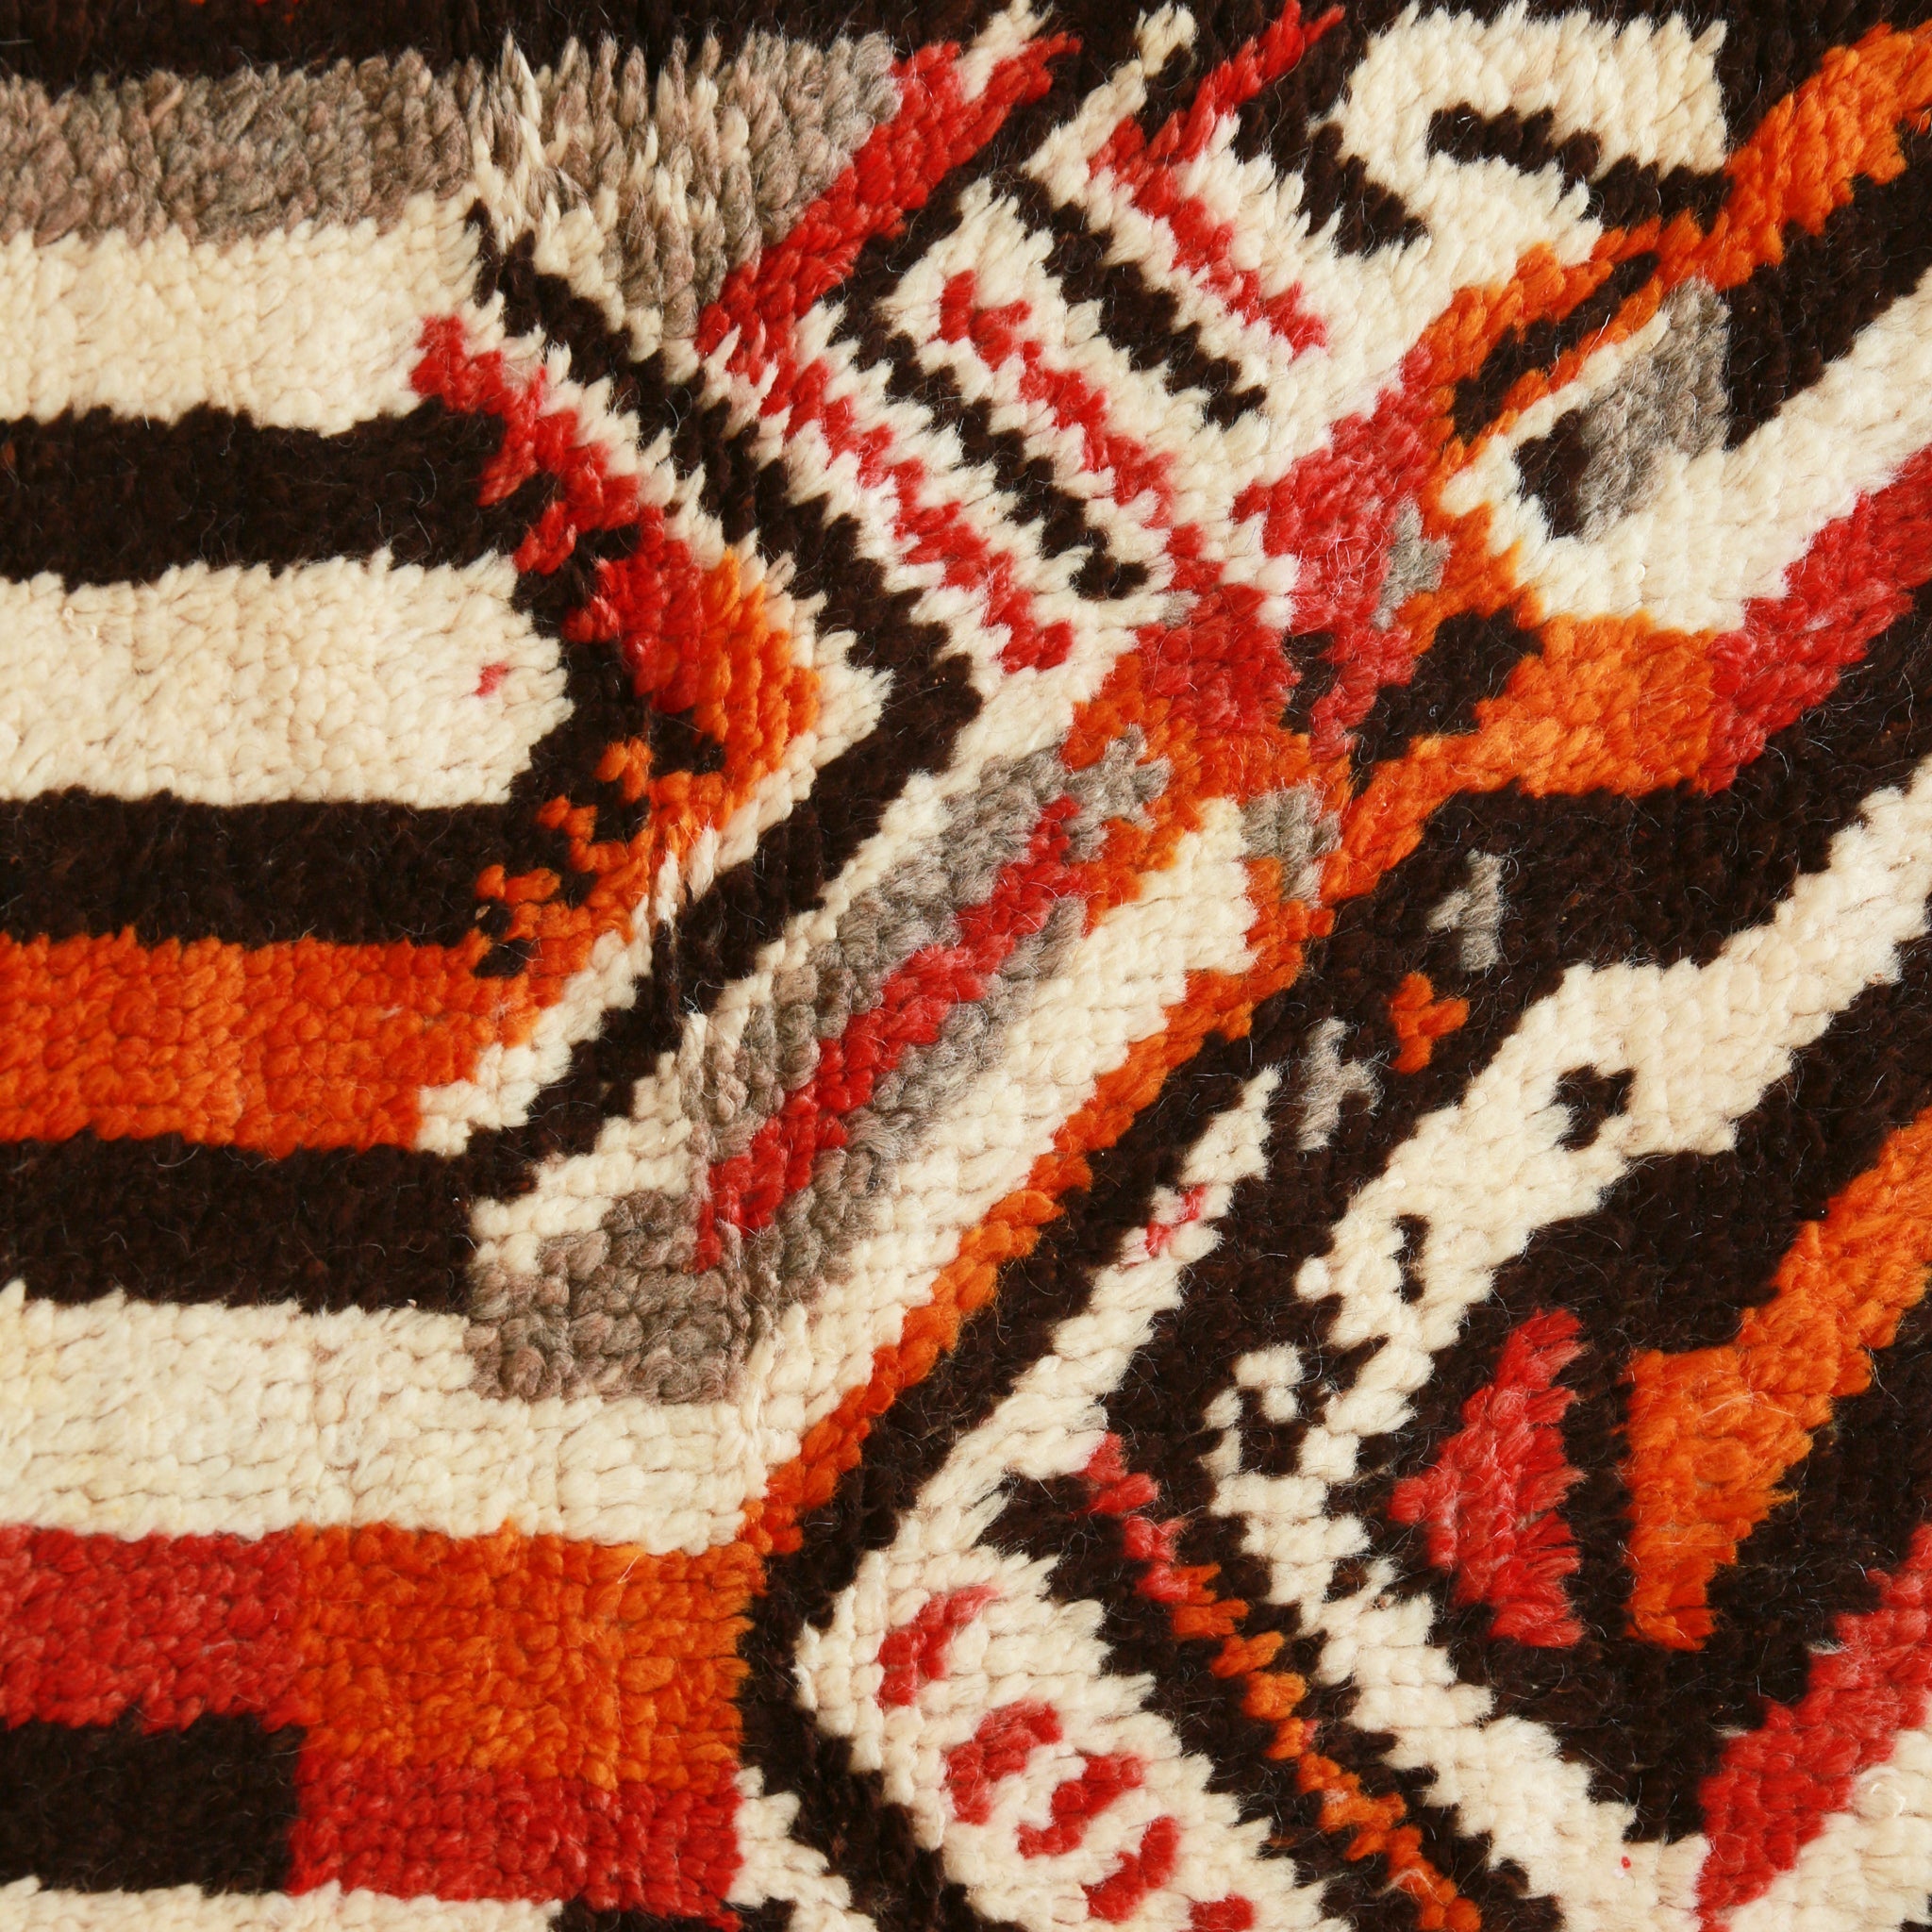 dettaglio della tappeto a pelo corto con con disegni geometrici di diversi colori